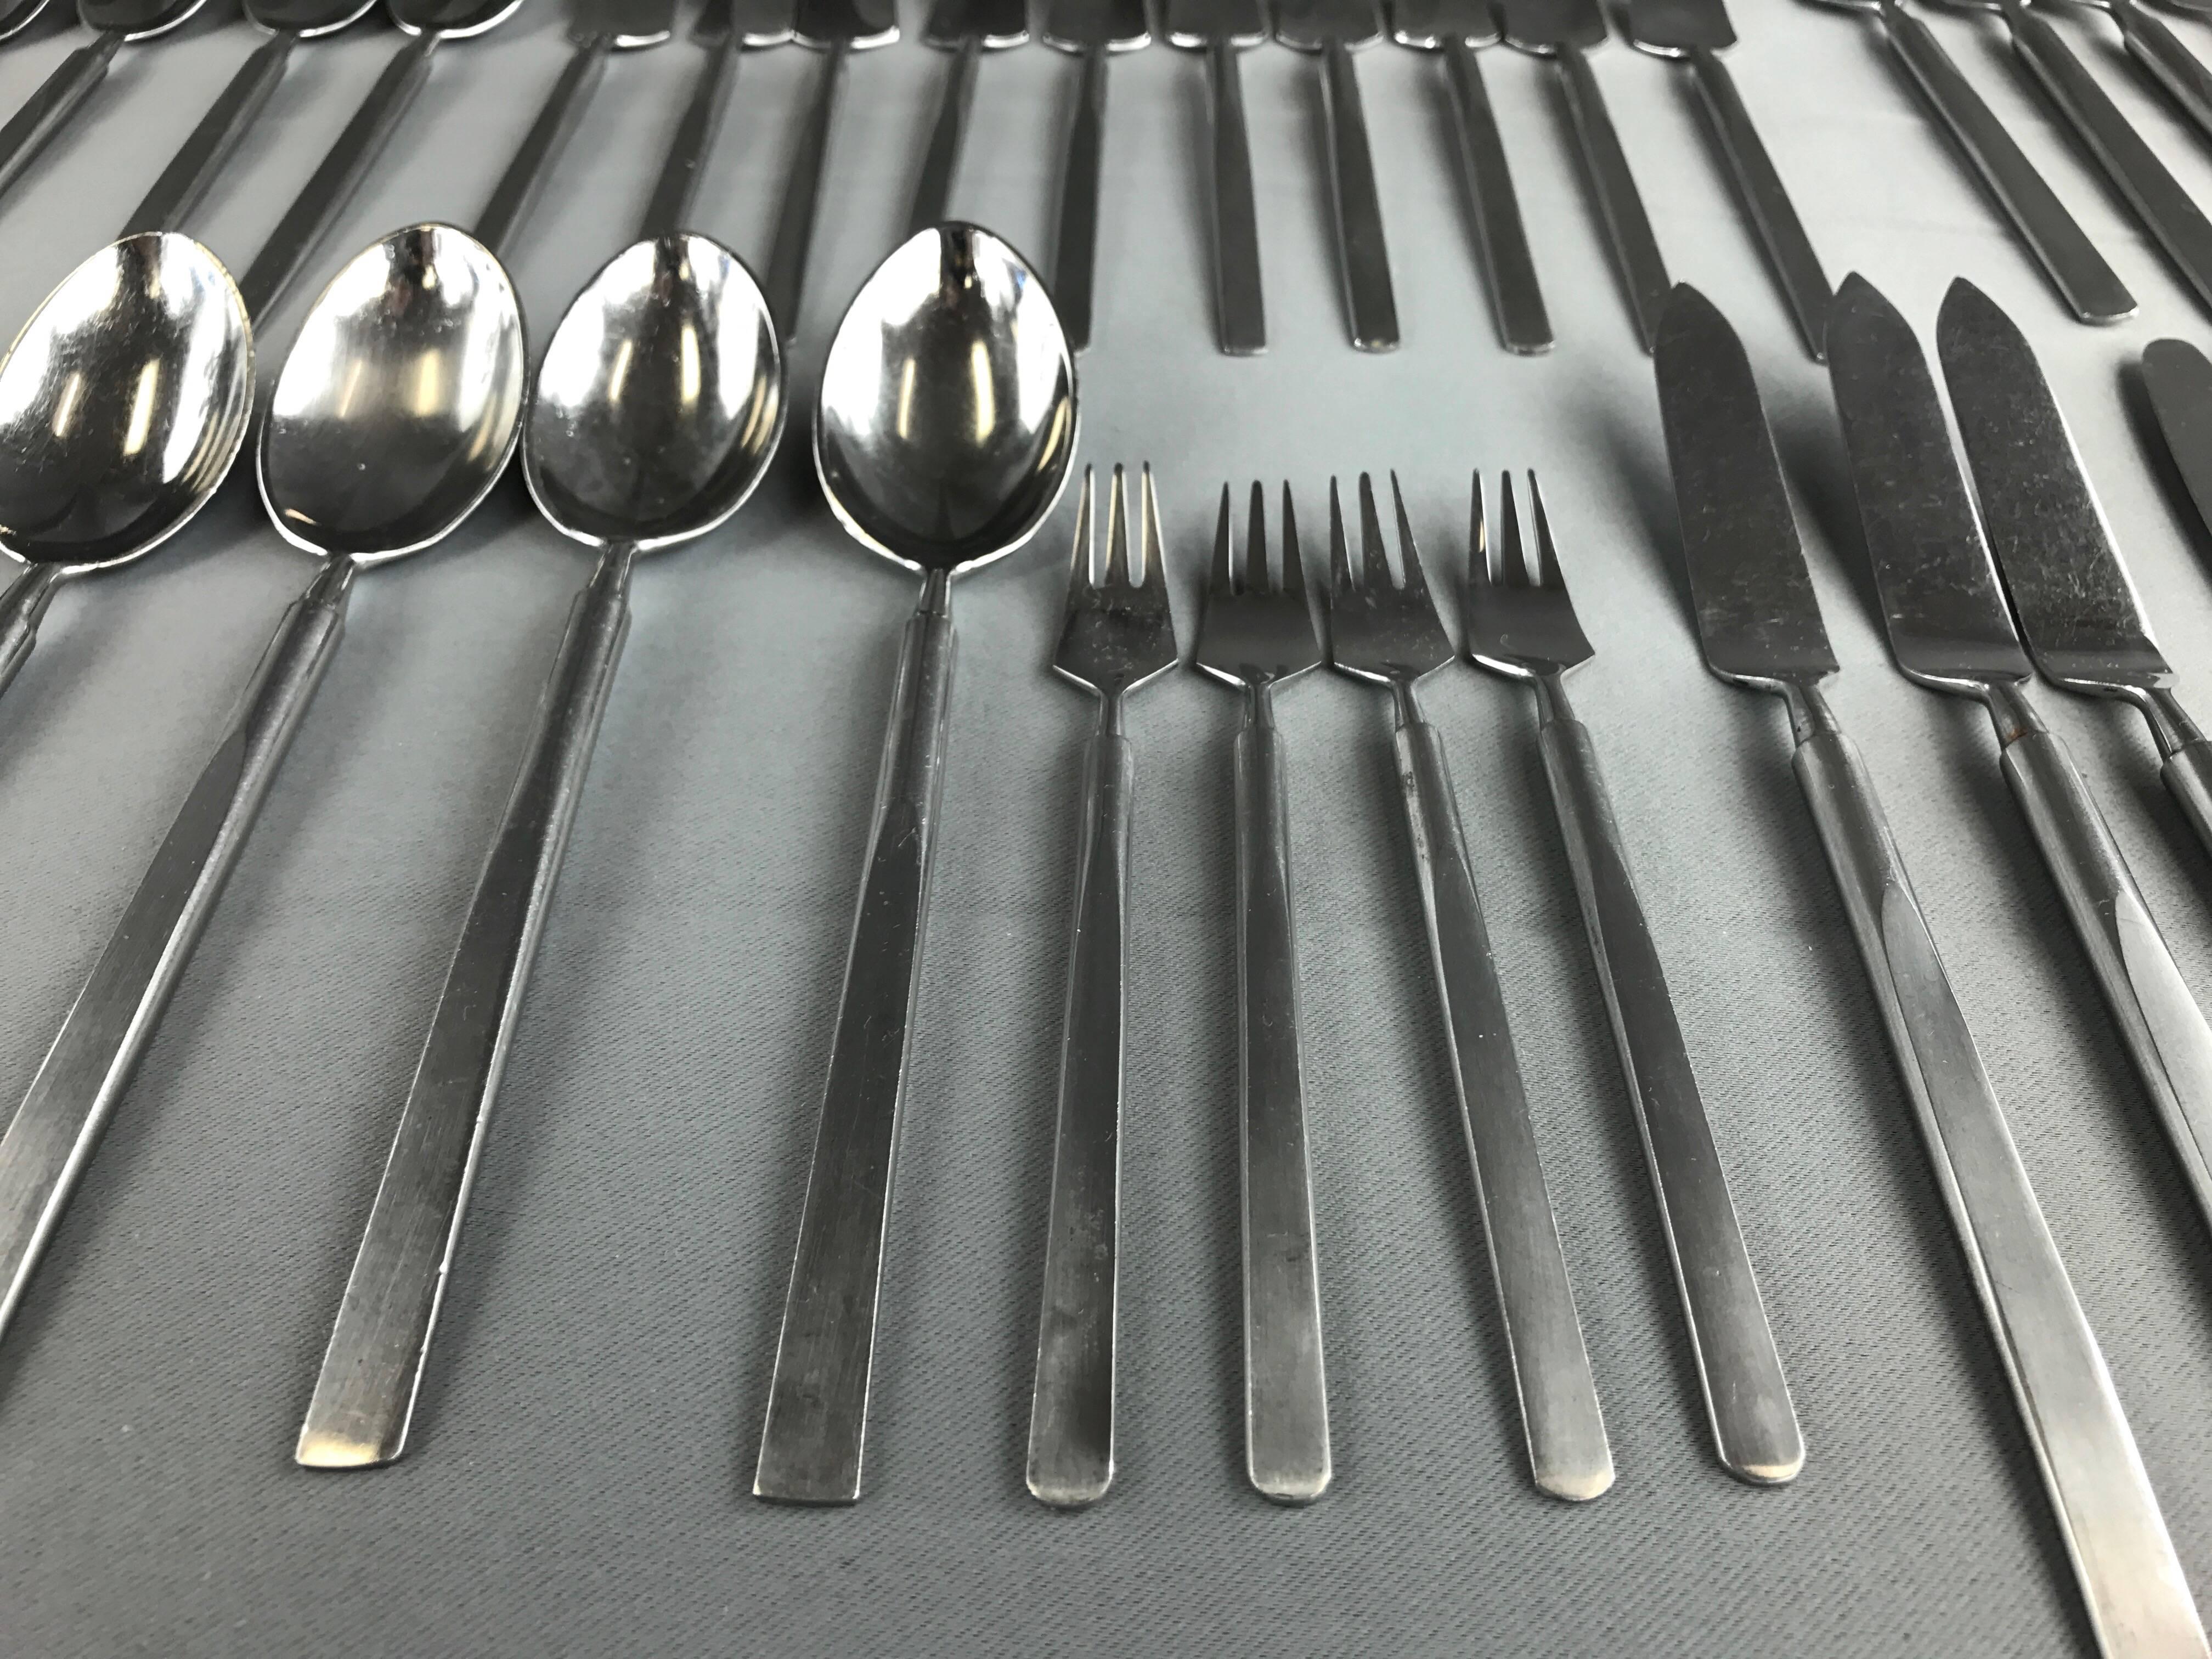 Stainless Steel Erik Herlow for Copenhagen Cutlery “Obelisk” Flatware Service for Ten